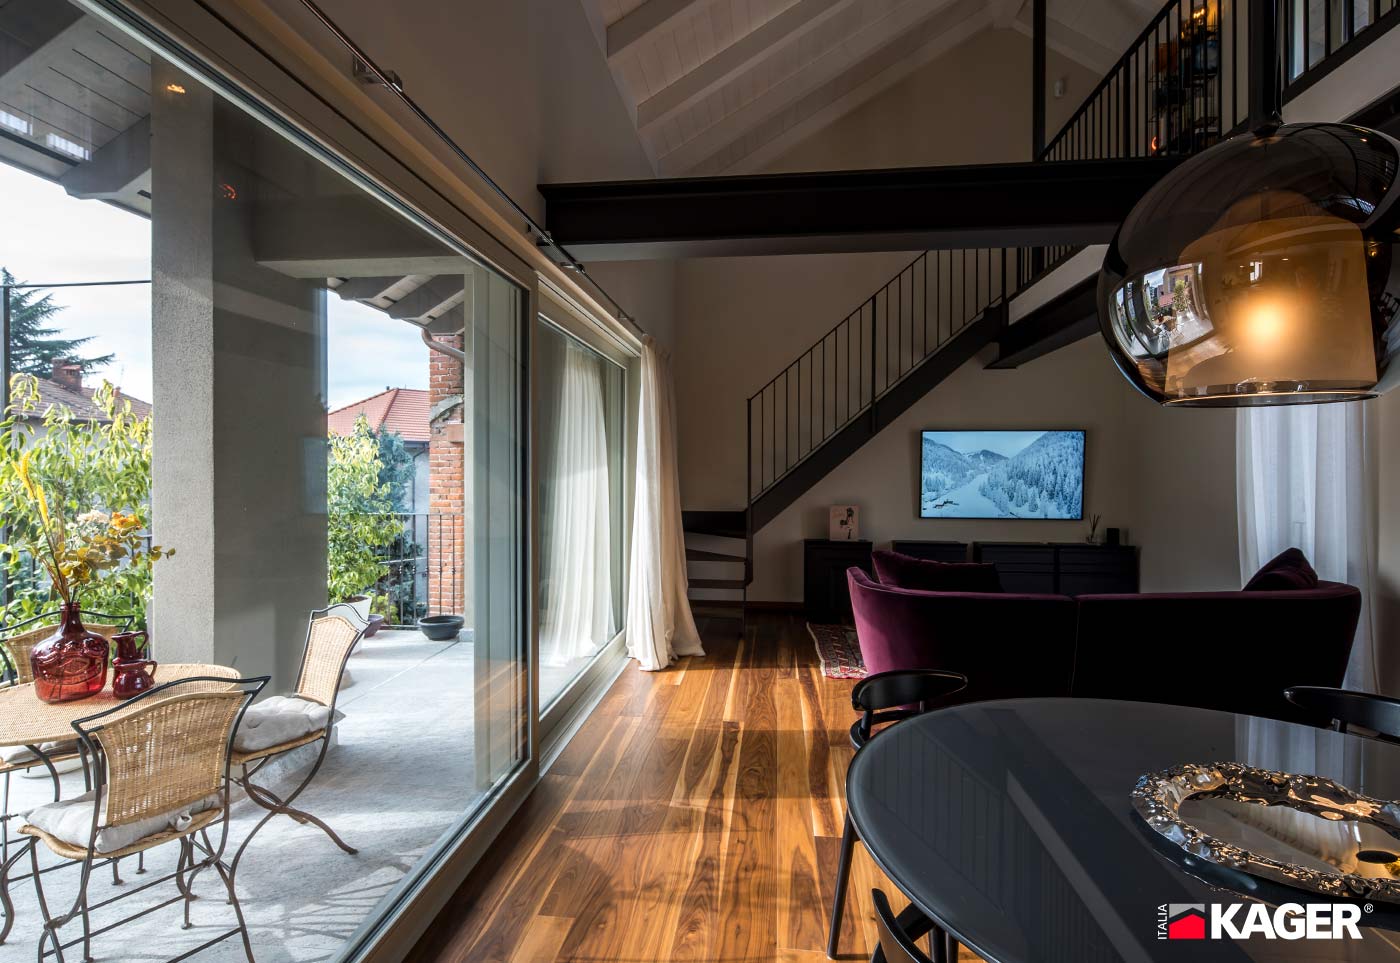 Casa-in-legno-Kager-Italia-Borgomanero-finestra